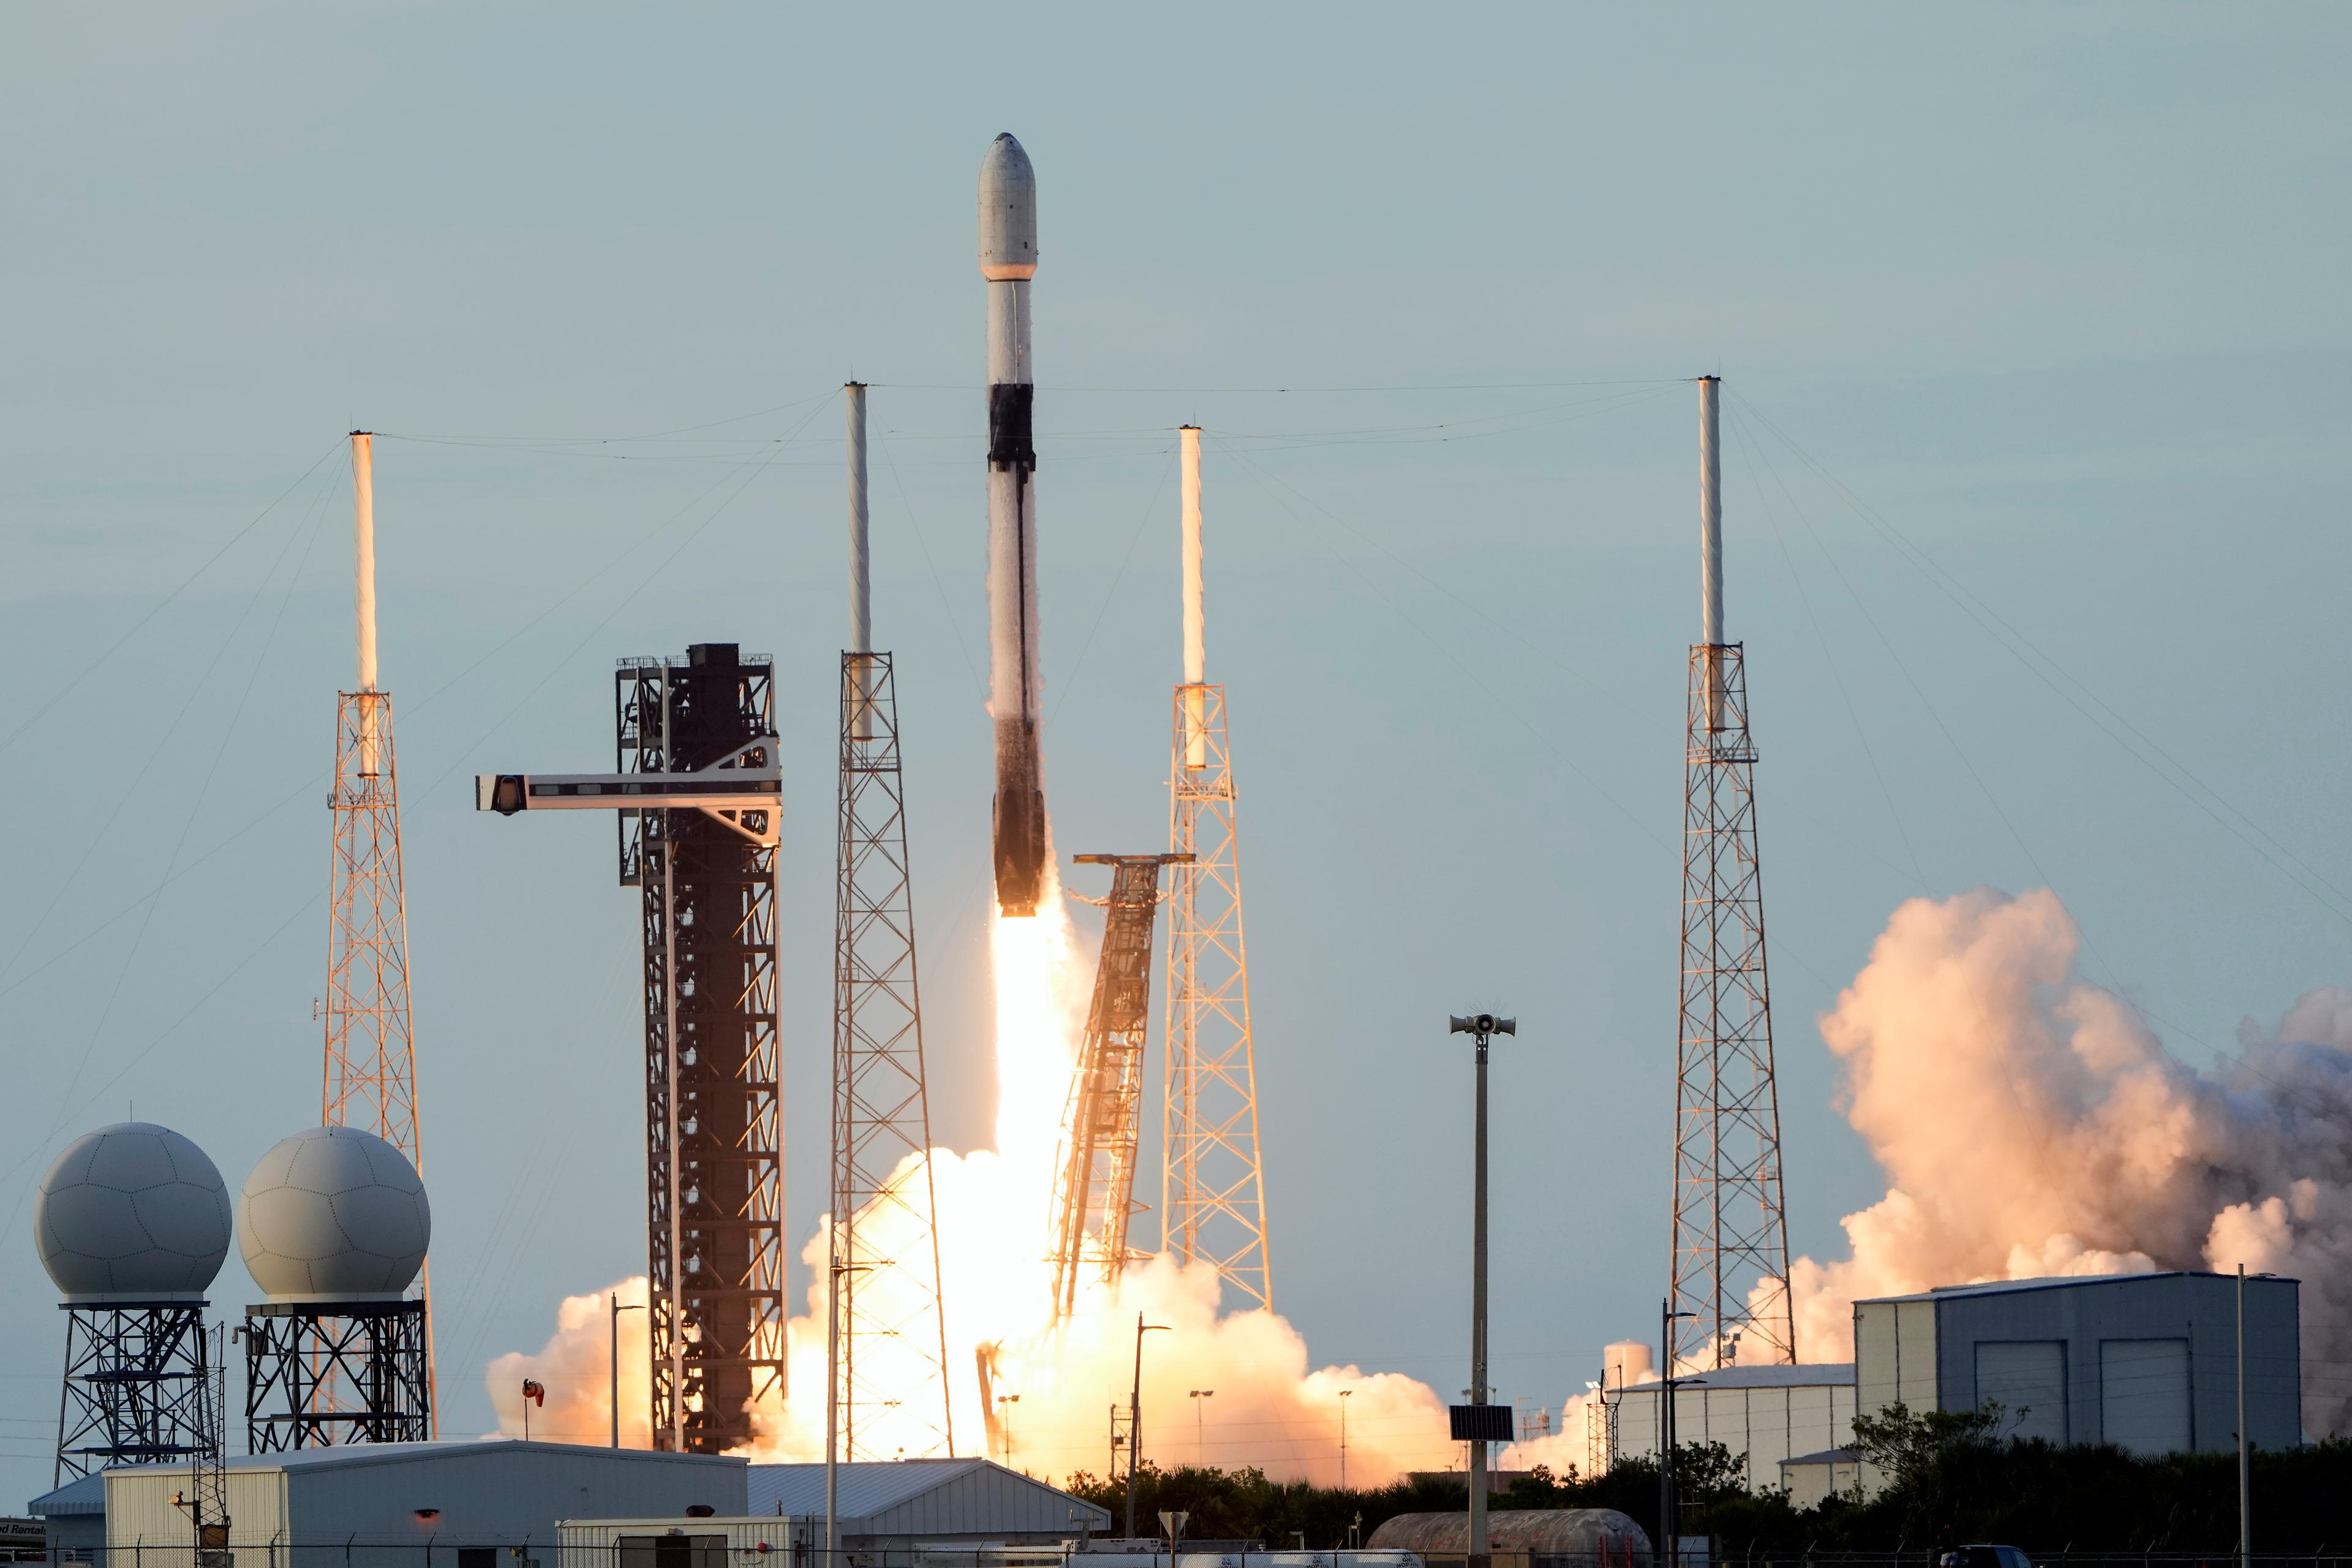 En Falconraket med en turkisk satellit ombord skjuts upp från Cape Canaveral i Florida i måndags, bara några dagar innan en annan Falconraket havererar. Foto: John Raoux/AP/TT